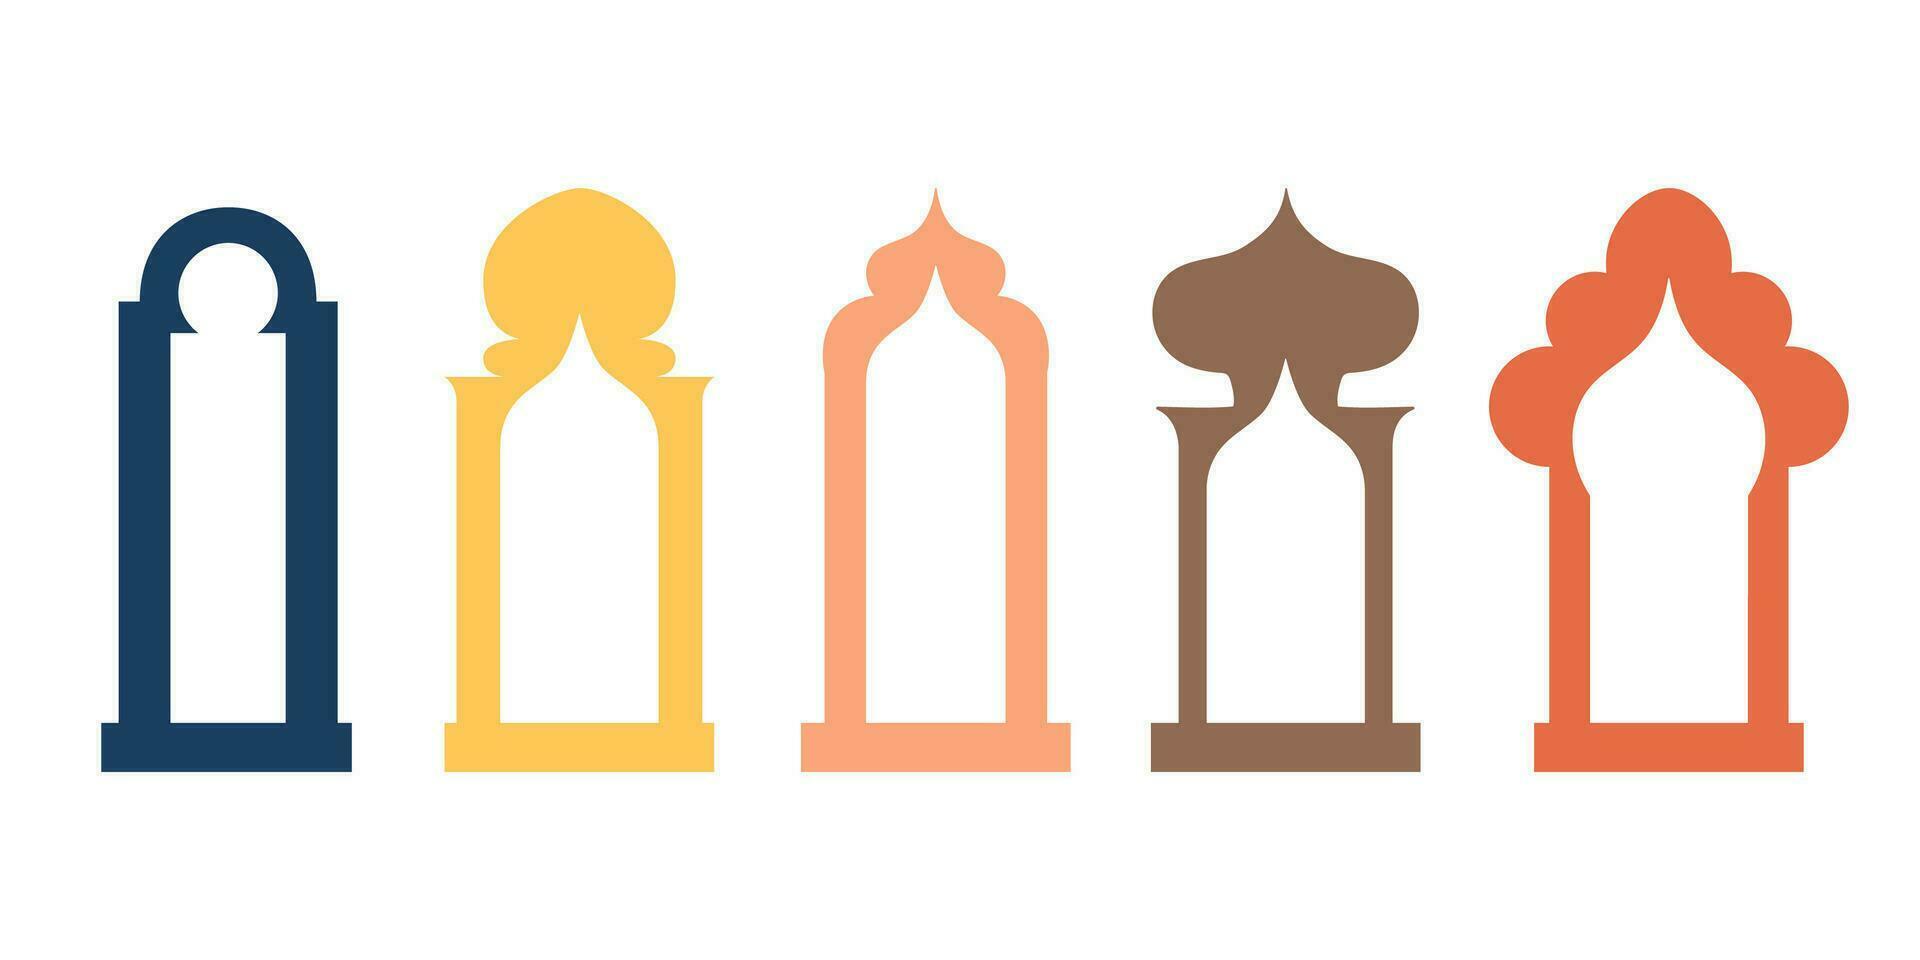 collection de arabe Oriental les fenêtres, arcs, miroir, porte moderne conception pour cadres, motifs, arrière-plans. mosquée dôme et lanternes islamique Ramadan kareem et eid mubarak style. vecteur illustration